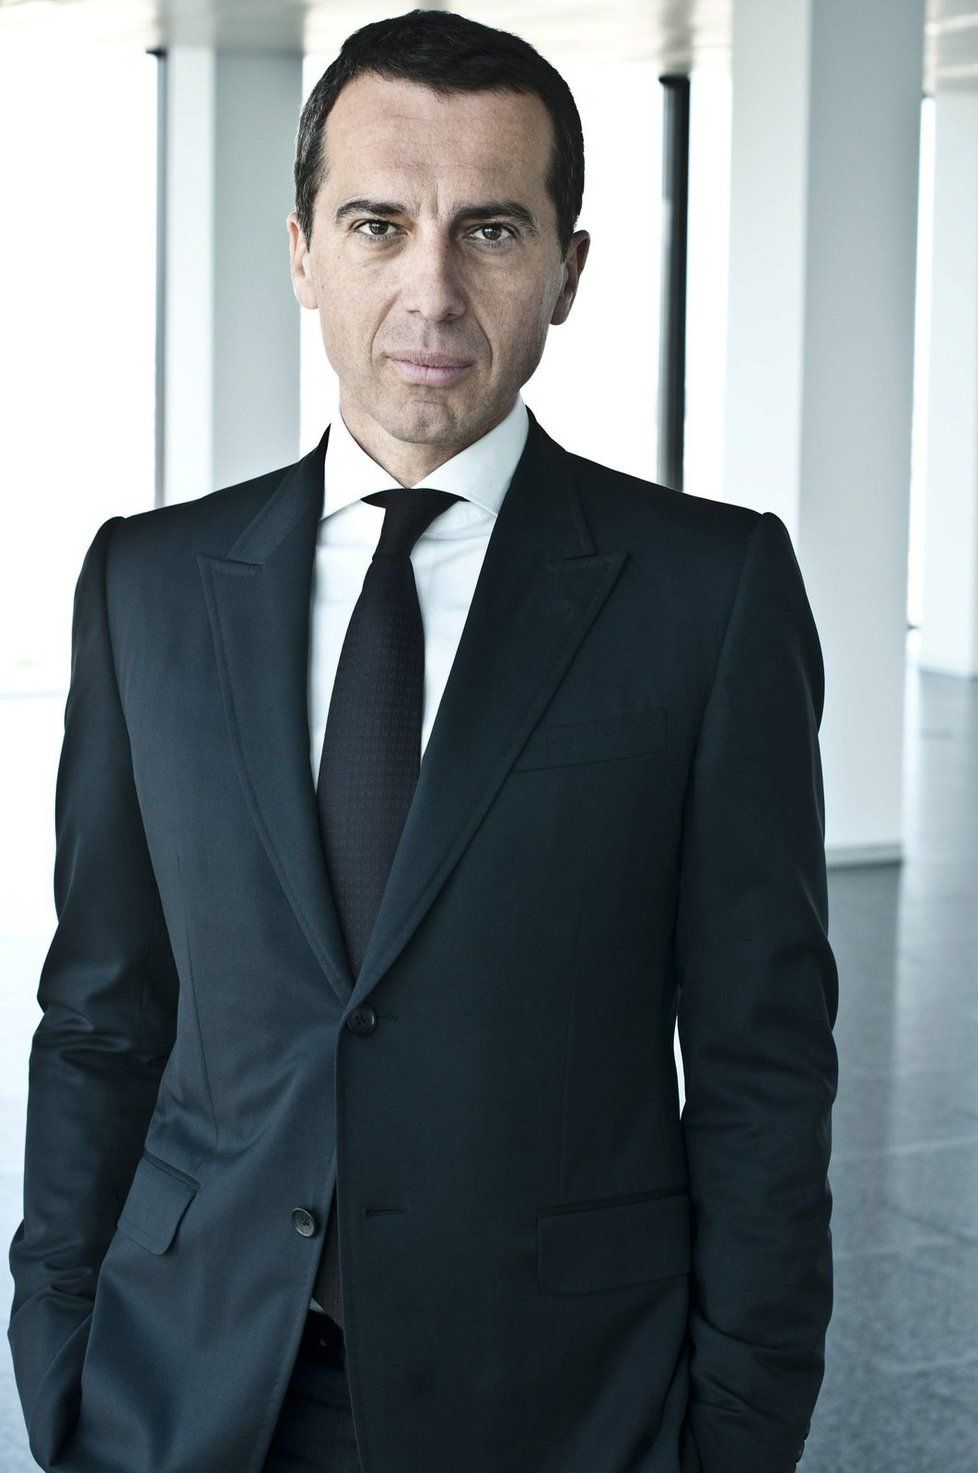 Rakouský kancléř Christian Kern